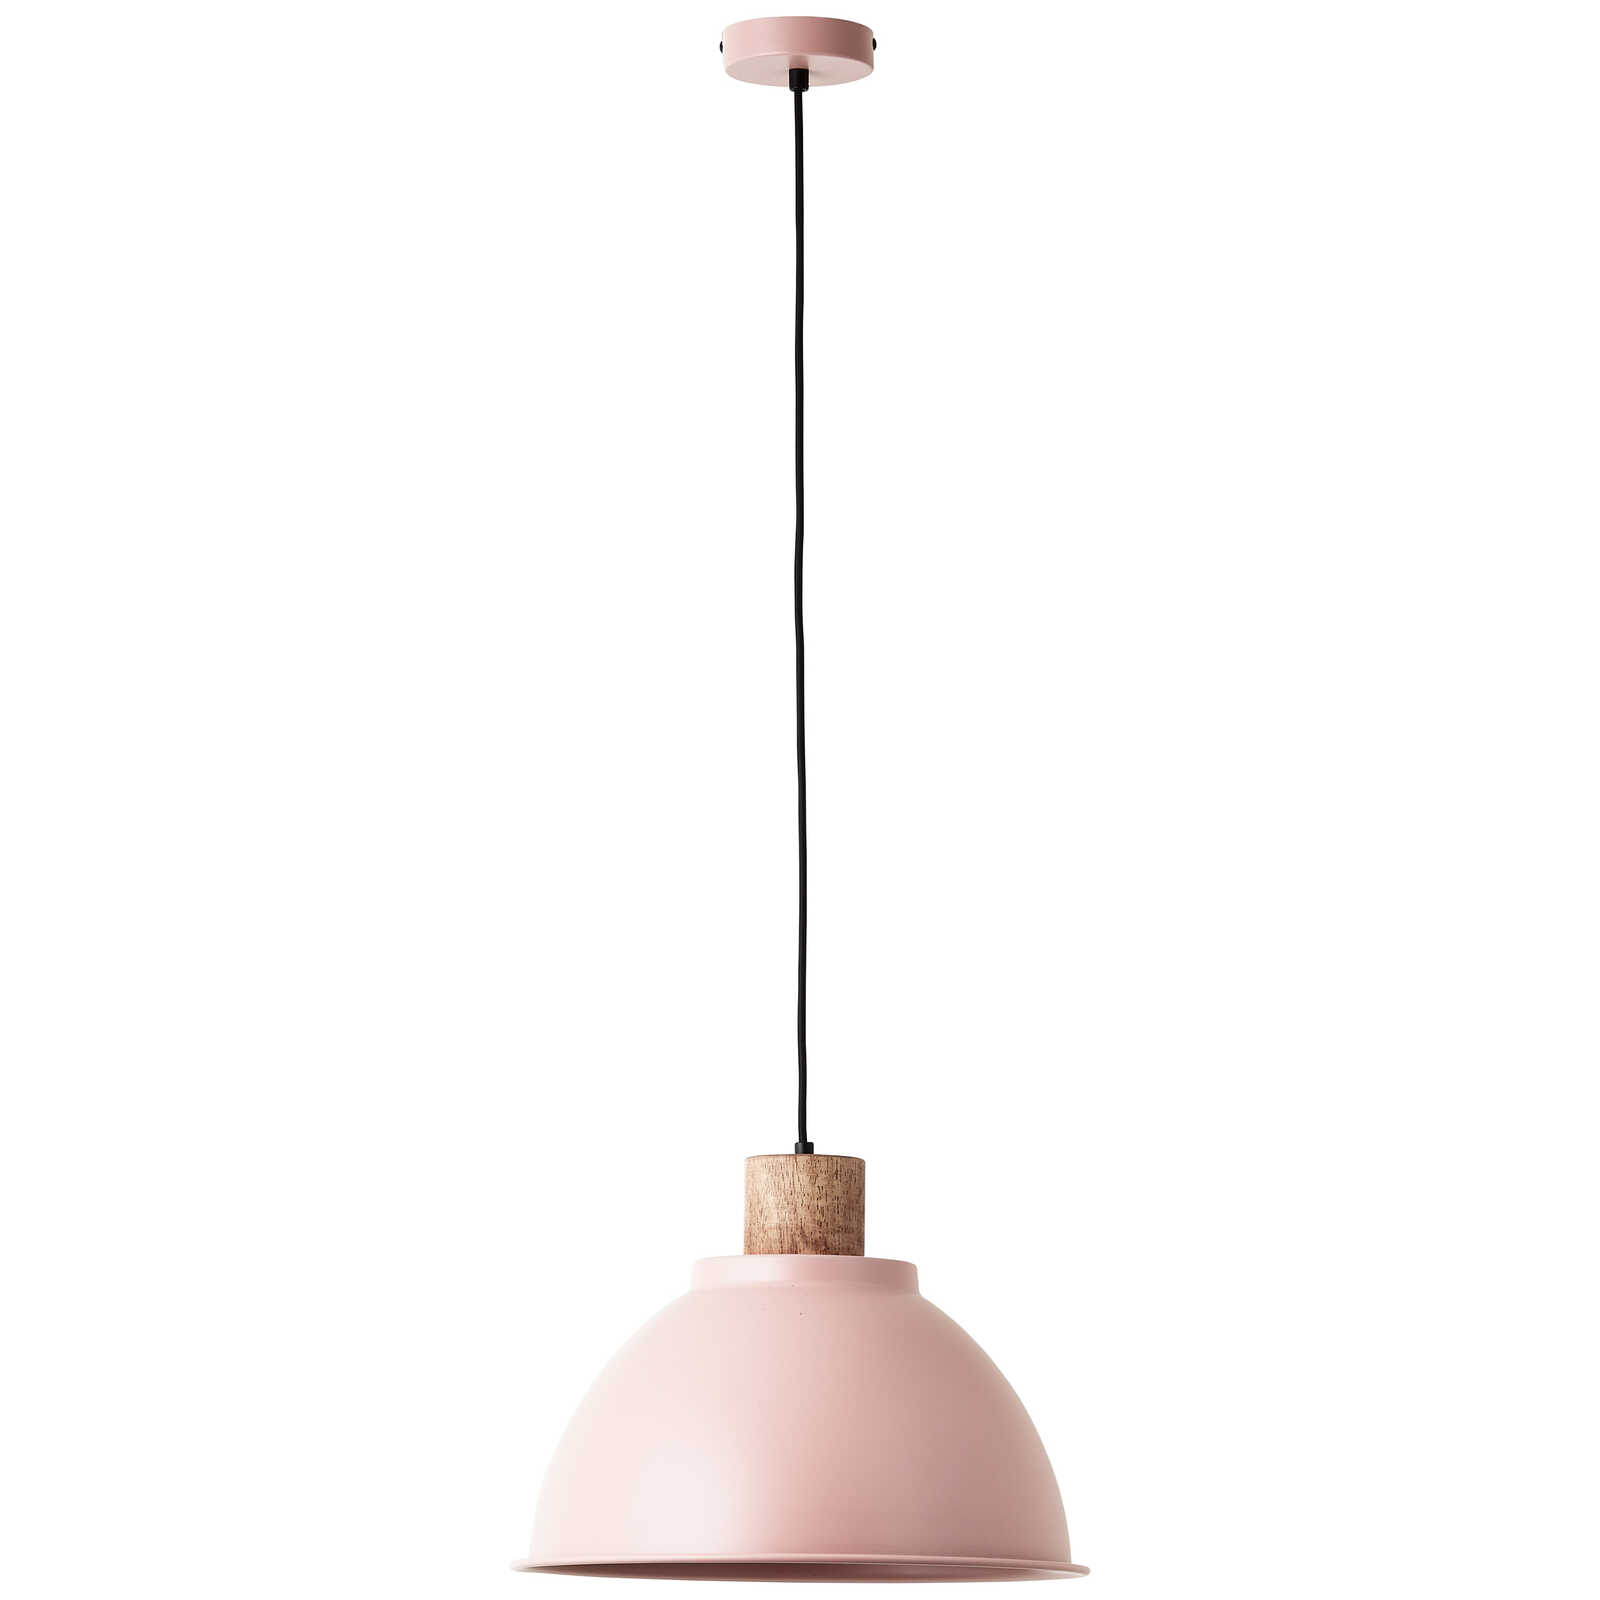             Houten hanglamp - Franziska 10 - Roze
        